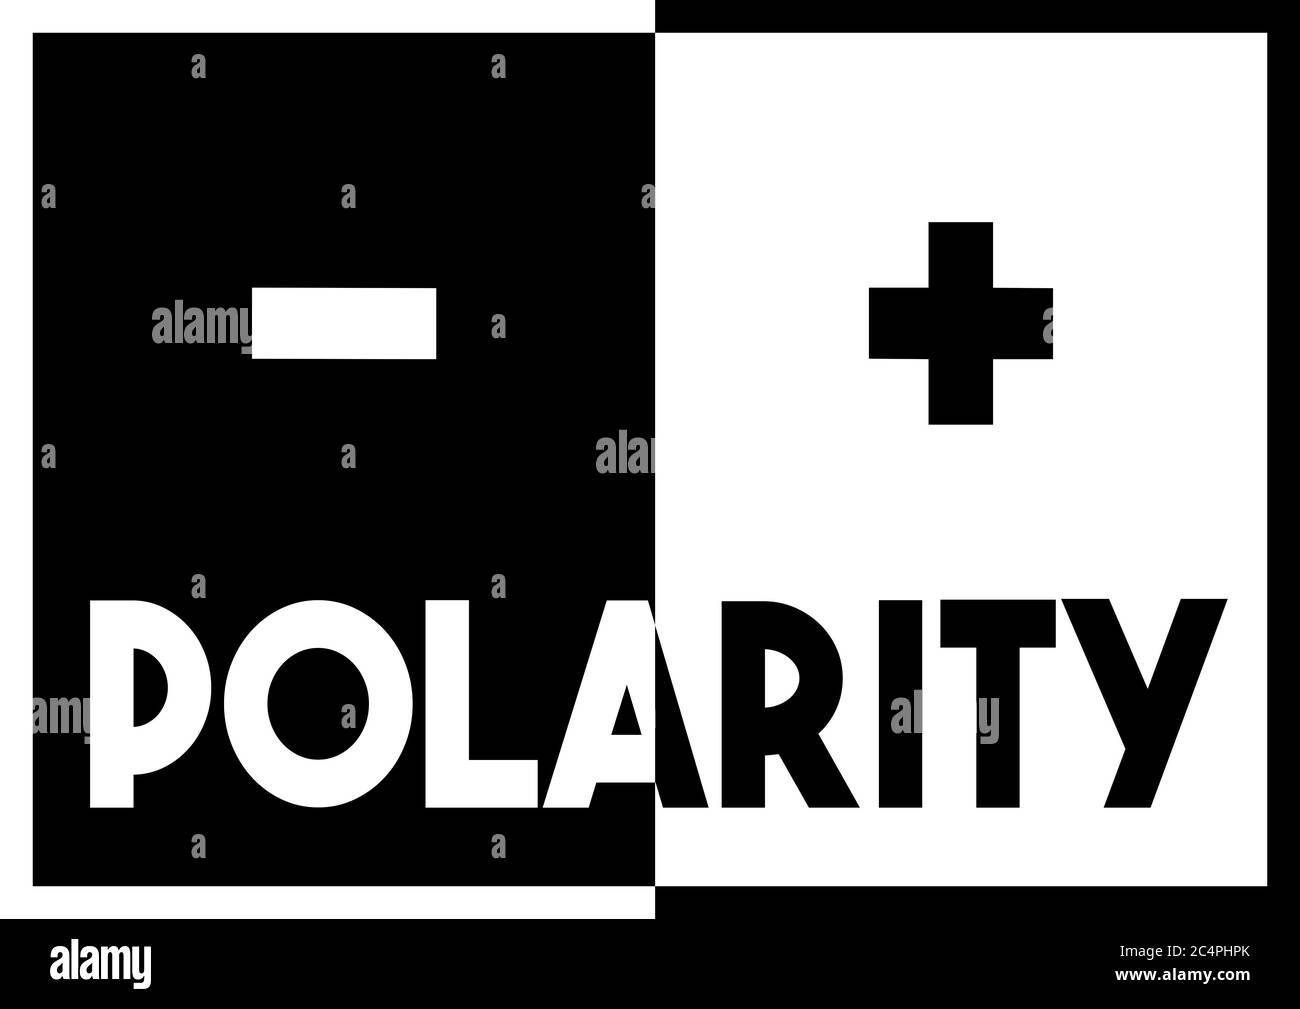 Un texto de diseño en blanco y negro en negrita ilustración gráfica sobre  el concepto de polaridad eléctrica u otra forma de polaridad Fotografía de  stock - Alamy